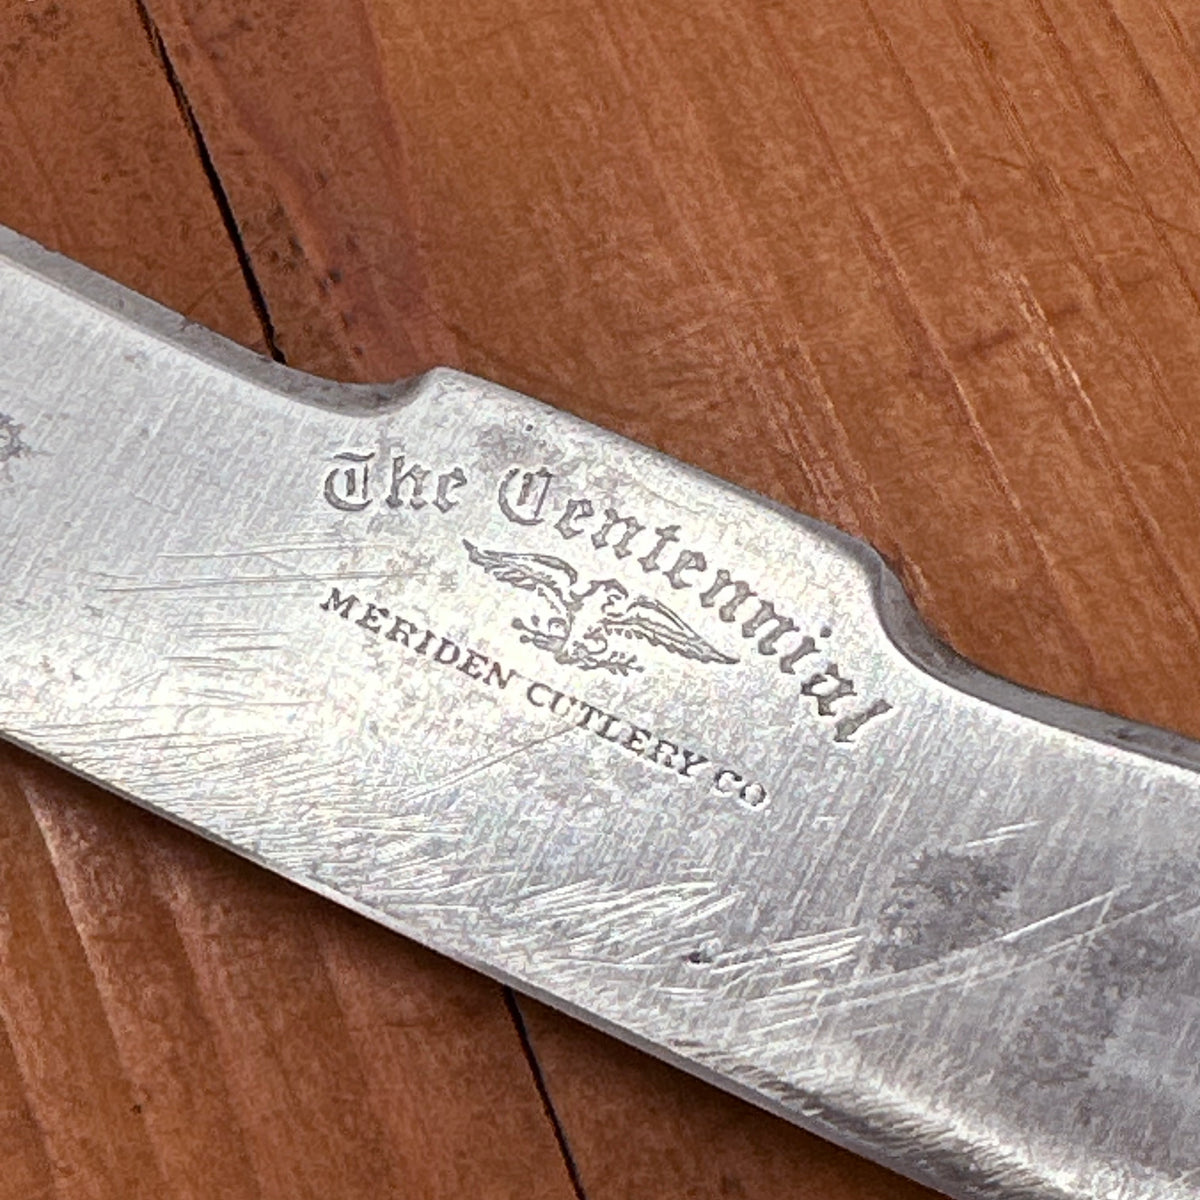 Meriden Cutlery Co Carving Set "The Centennial" 1876 Centennial